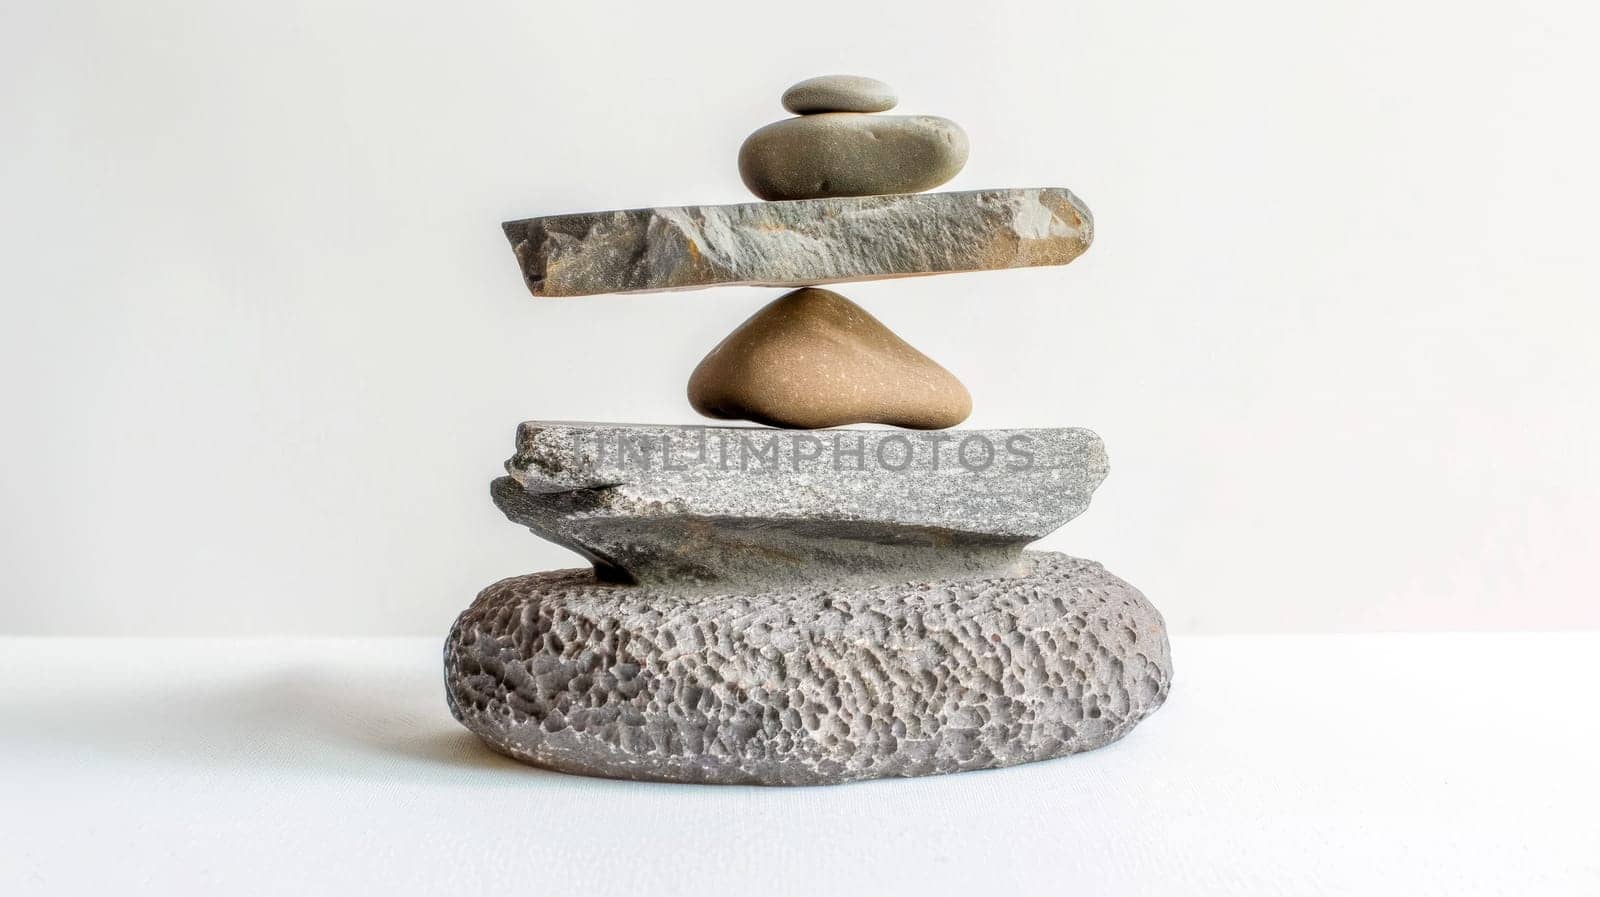 Balanced stone pile on white background by Edophoto